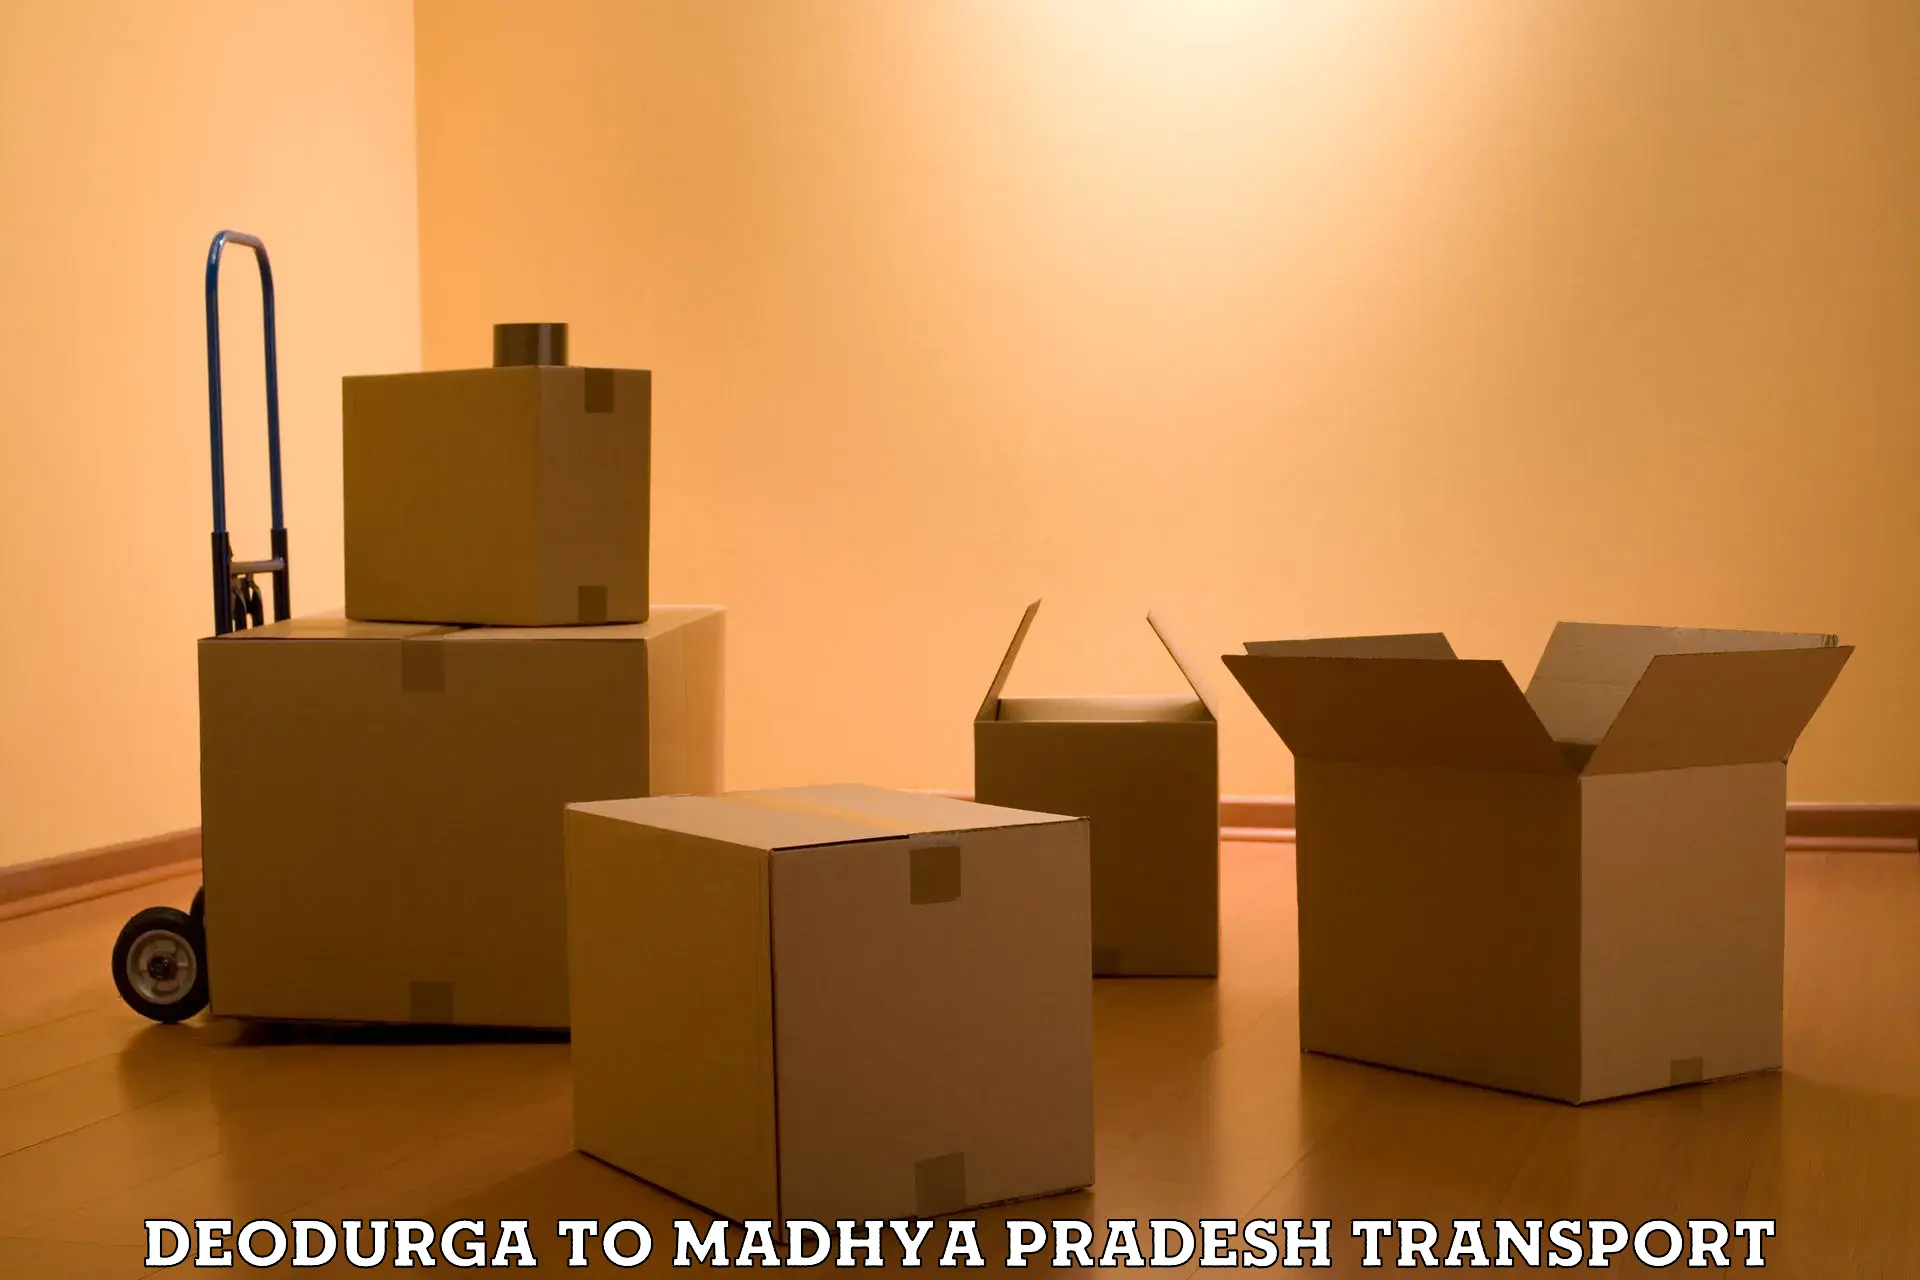 Furniture transport service Deodurga to Lavkush Nagar